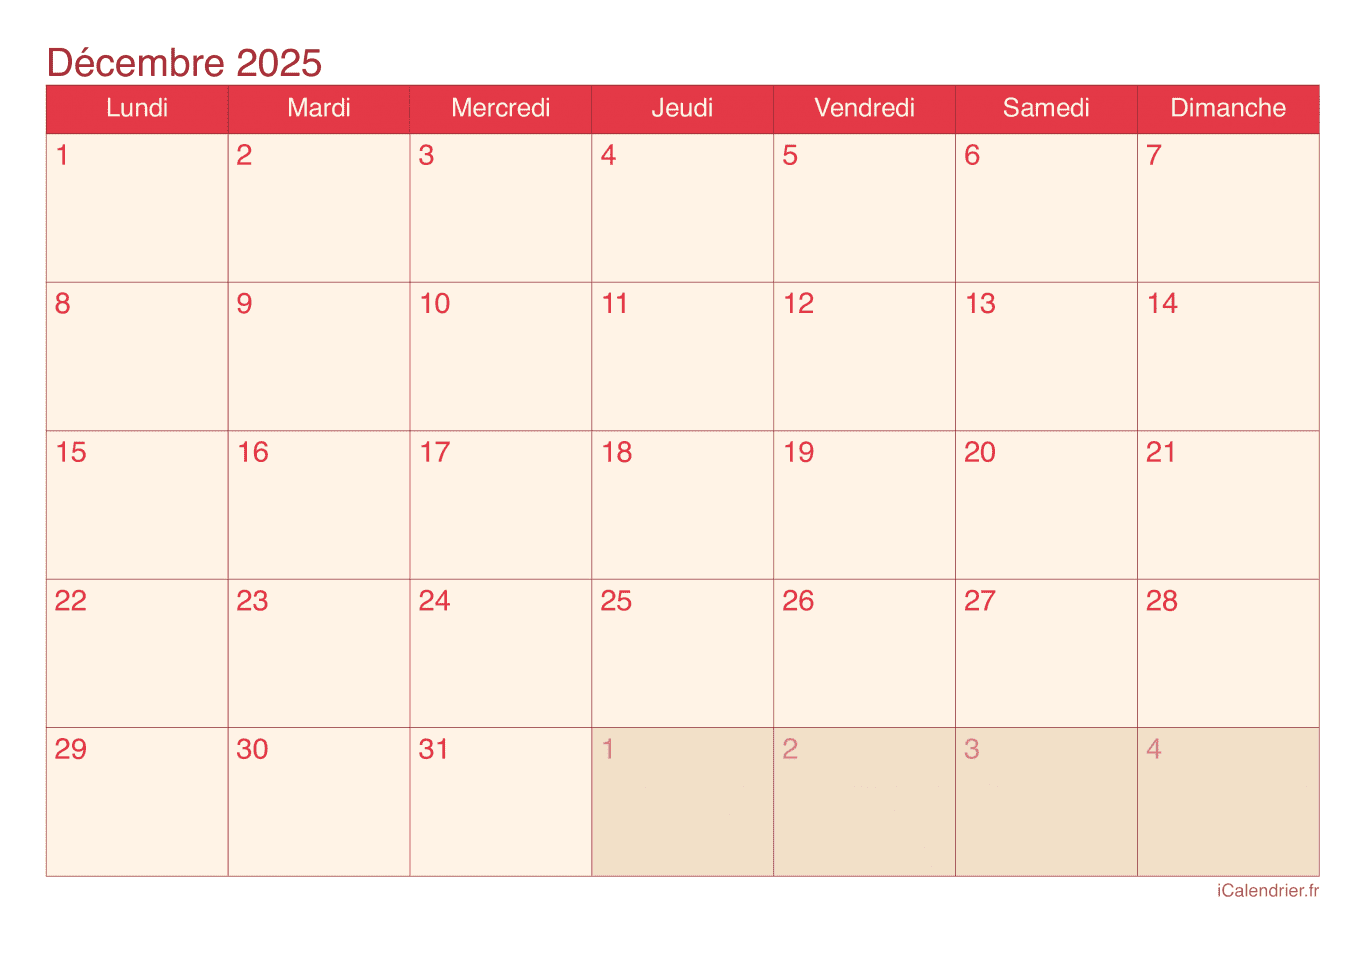 Calendrier de décembre 2025 - Cherry